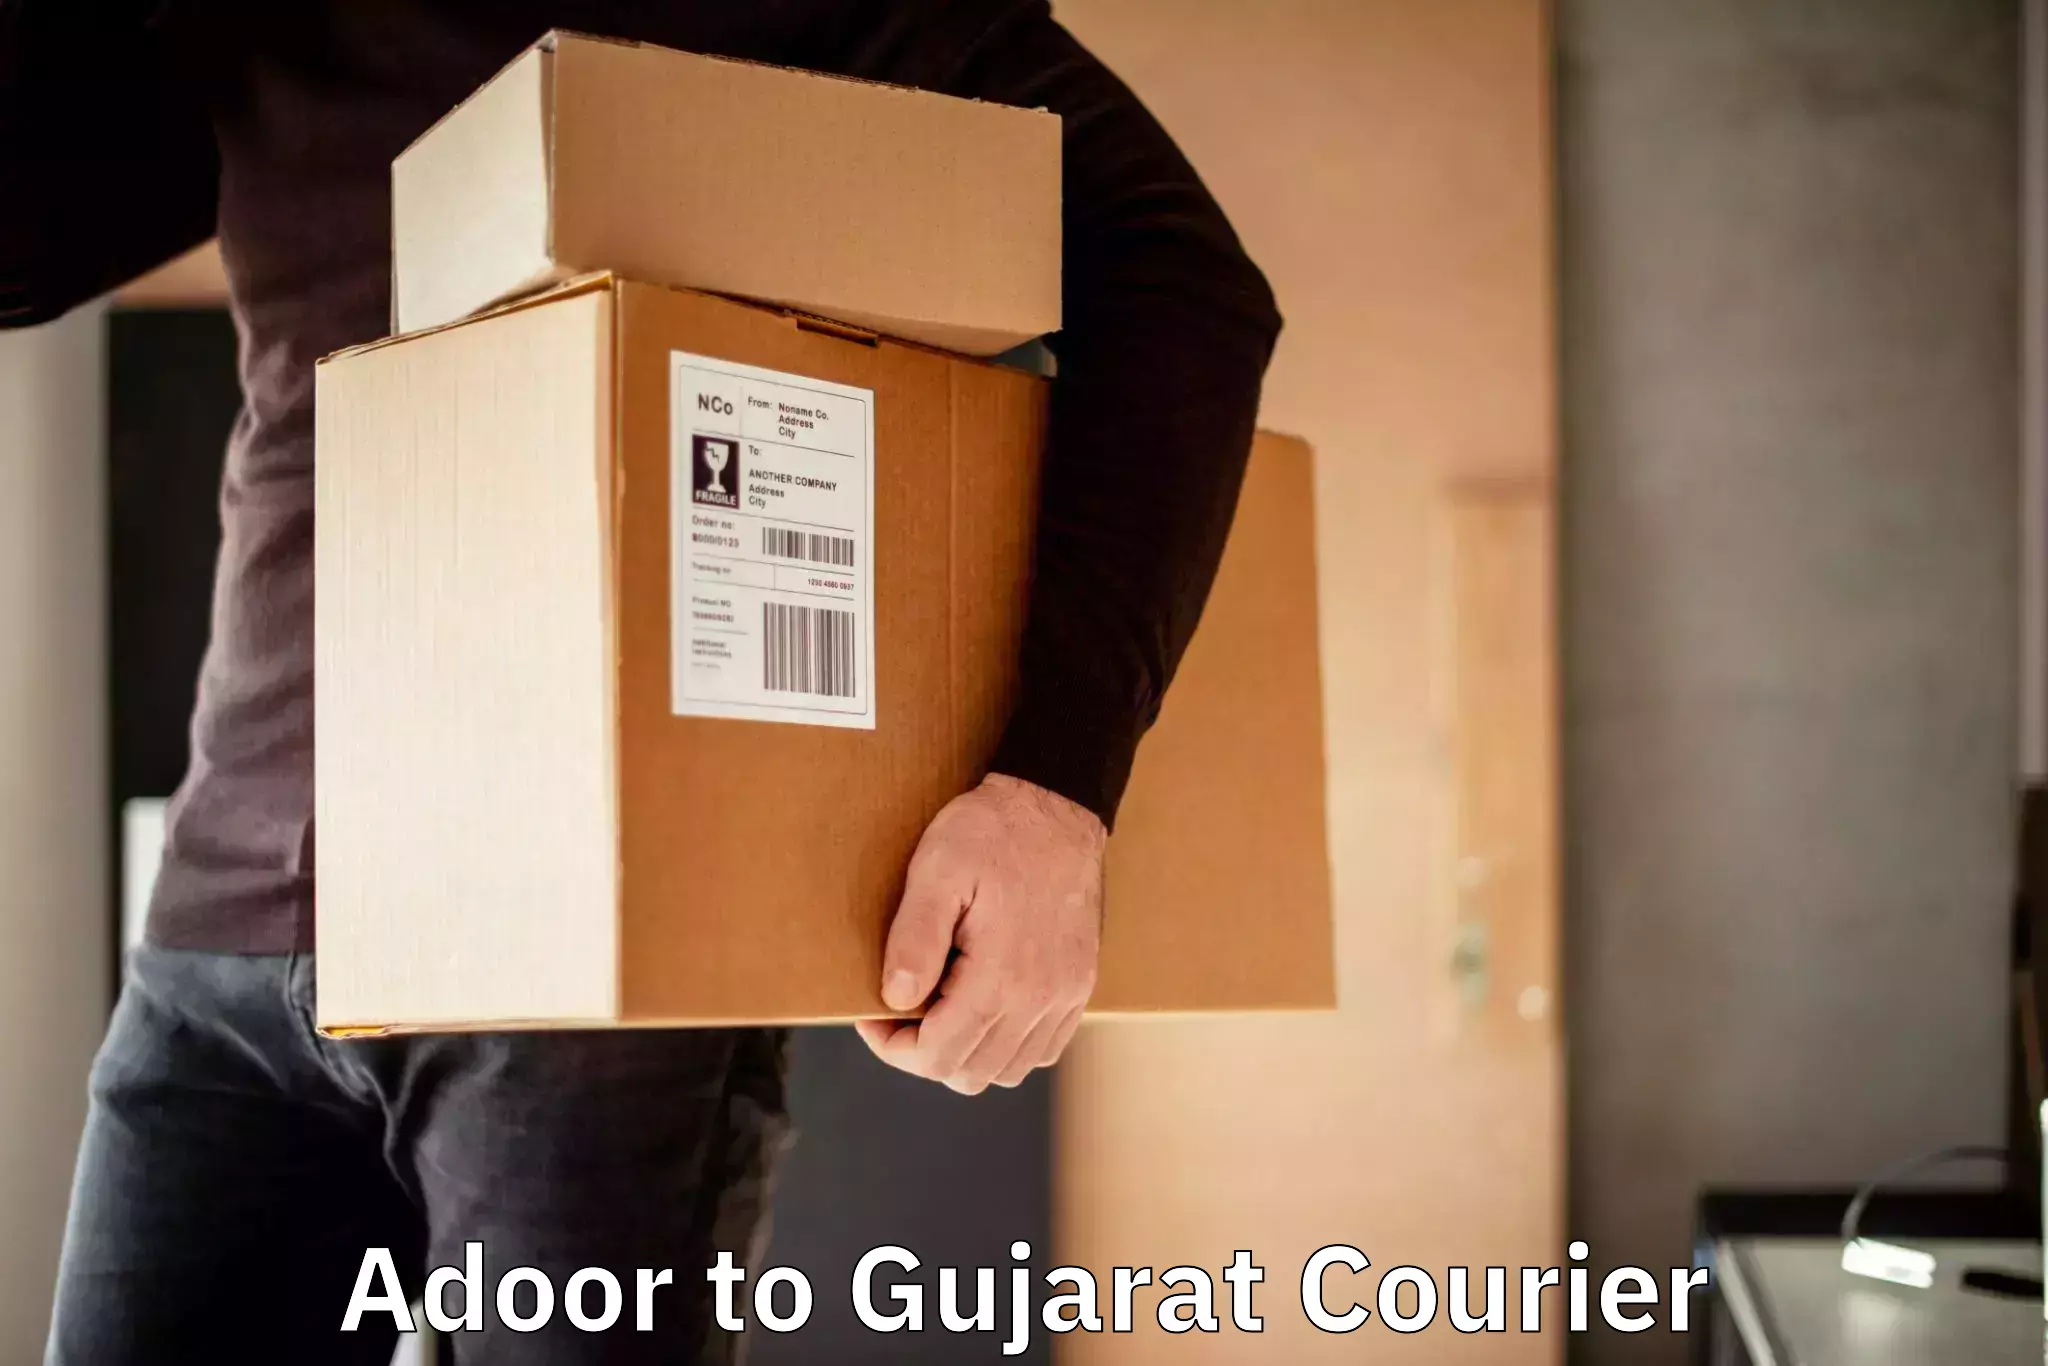 Easy return solutions Adoor to Gujarat